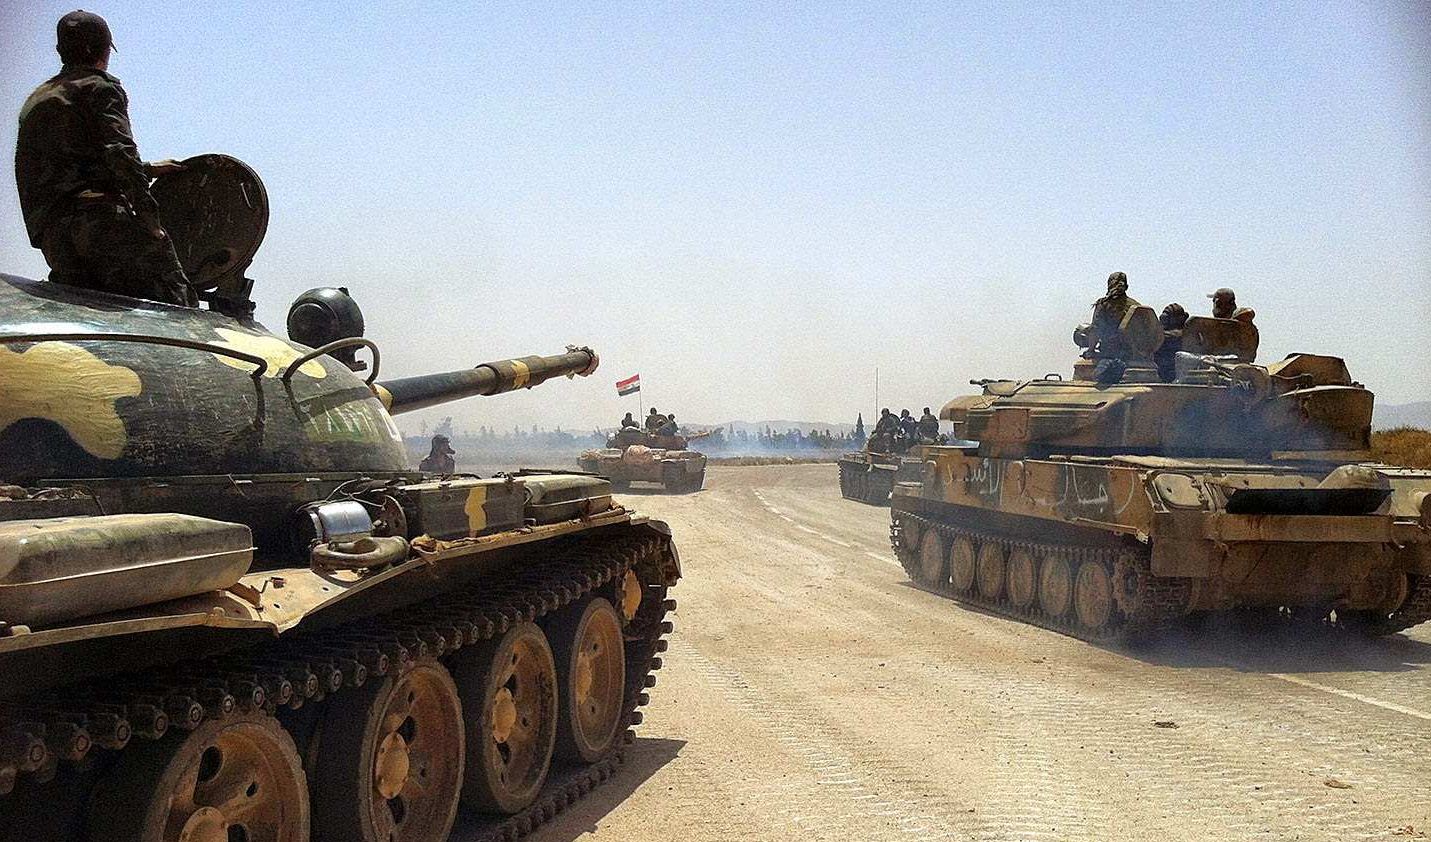 Спецчастите Tiger Force щурмуват Палмира (СНИМКИ/СХЕМА) 